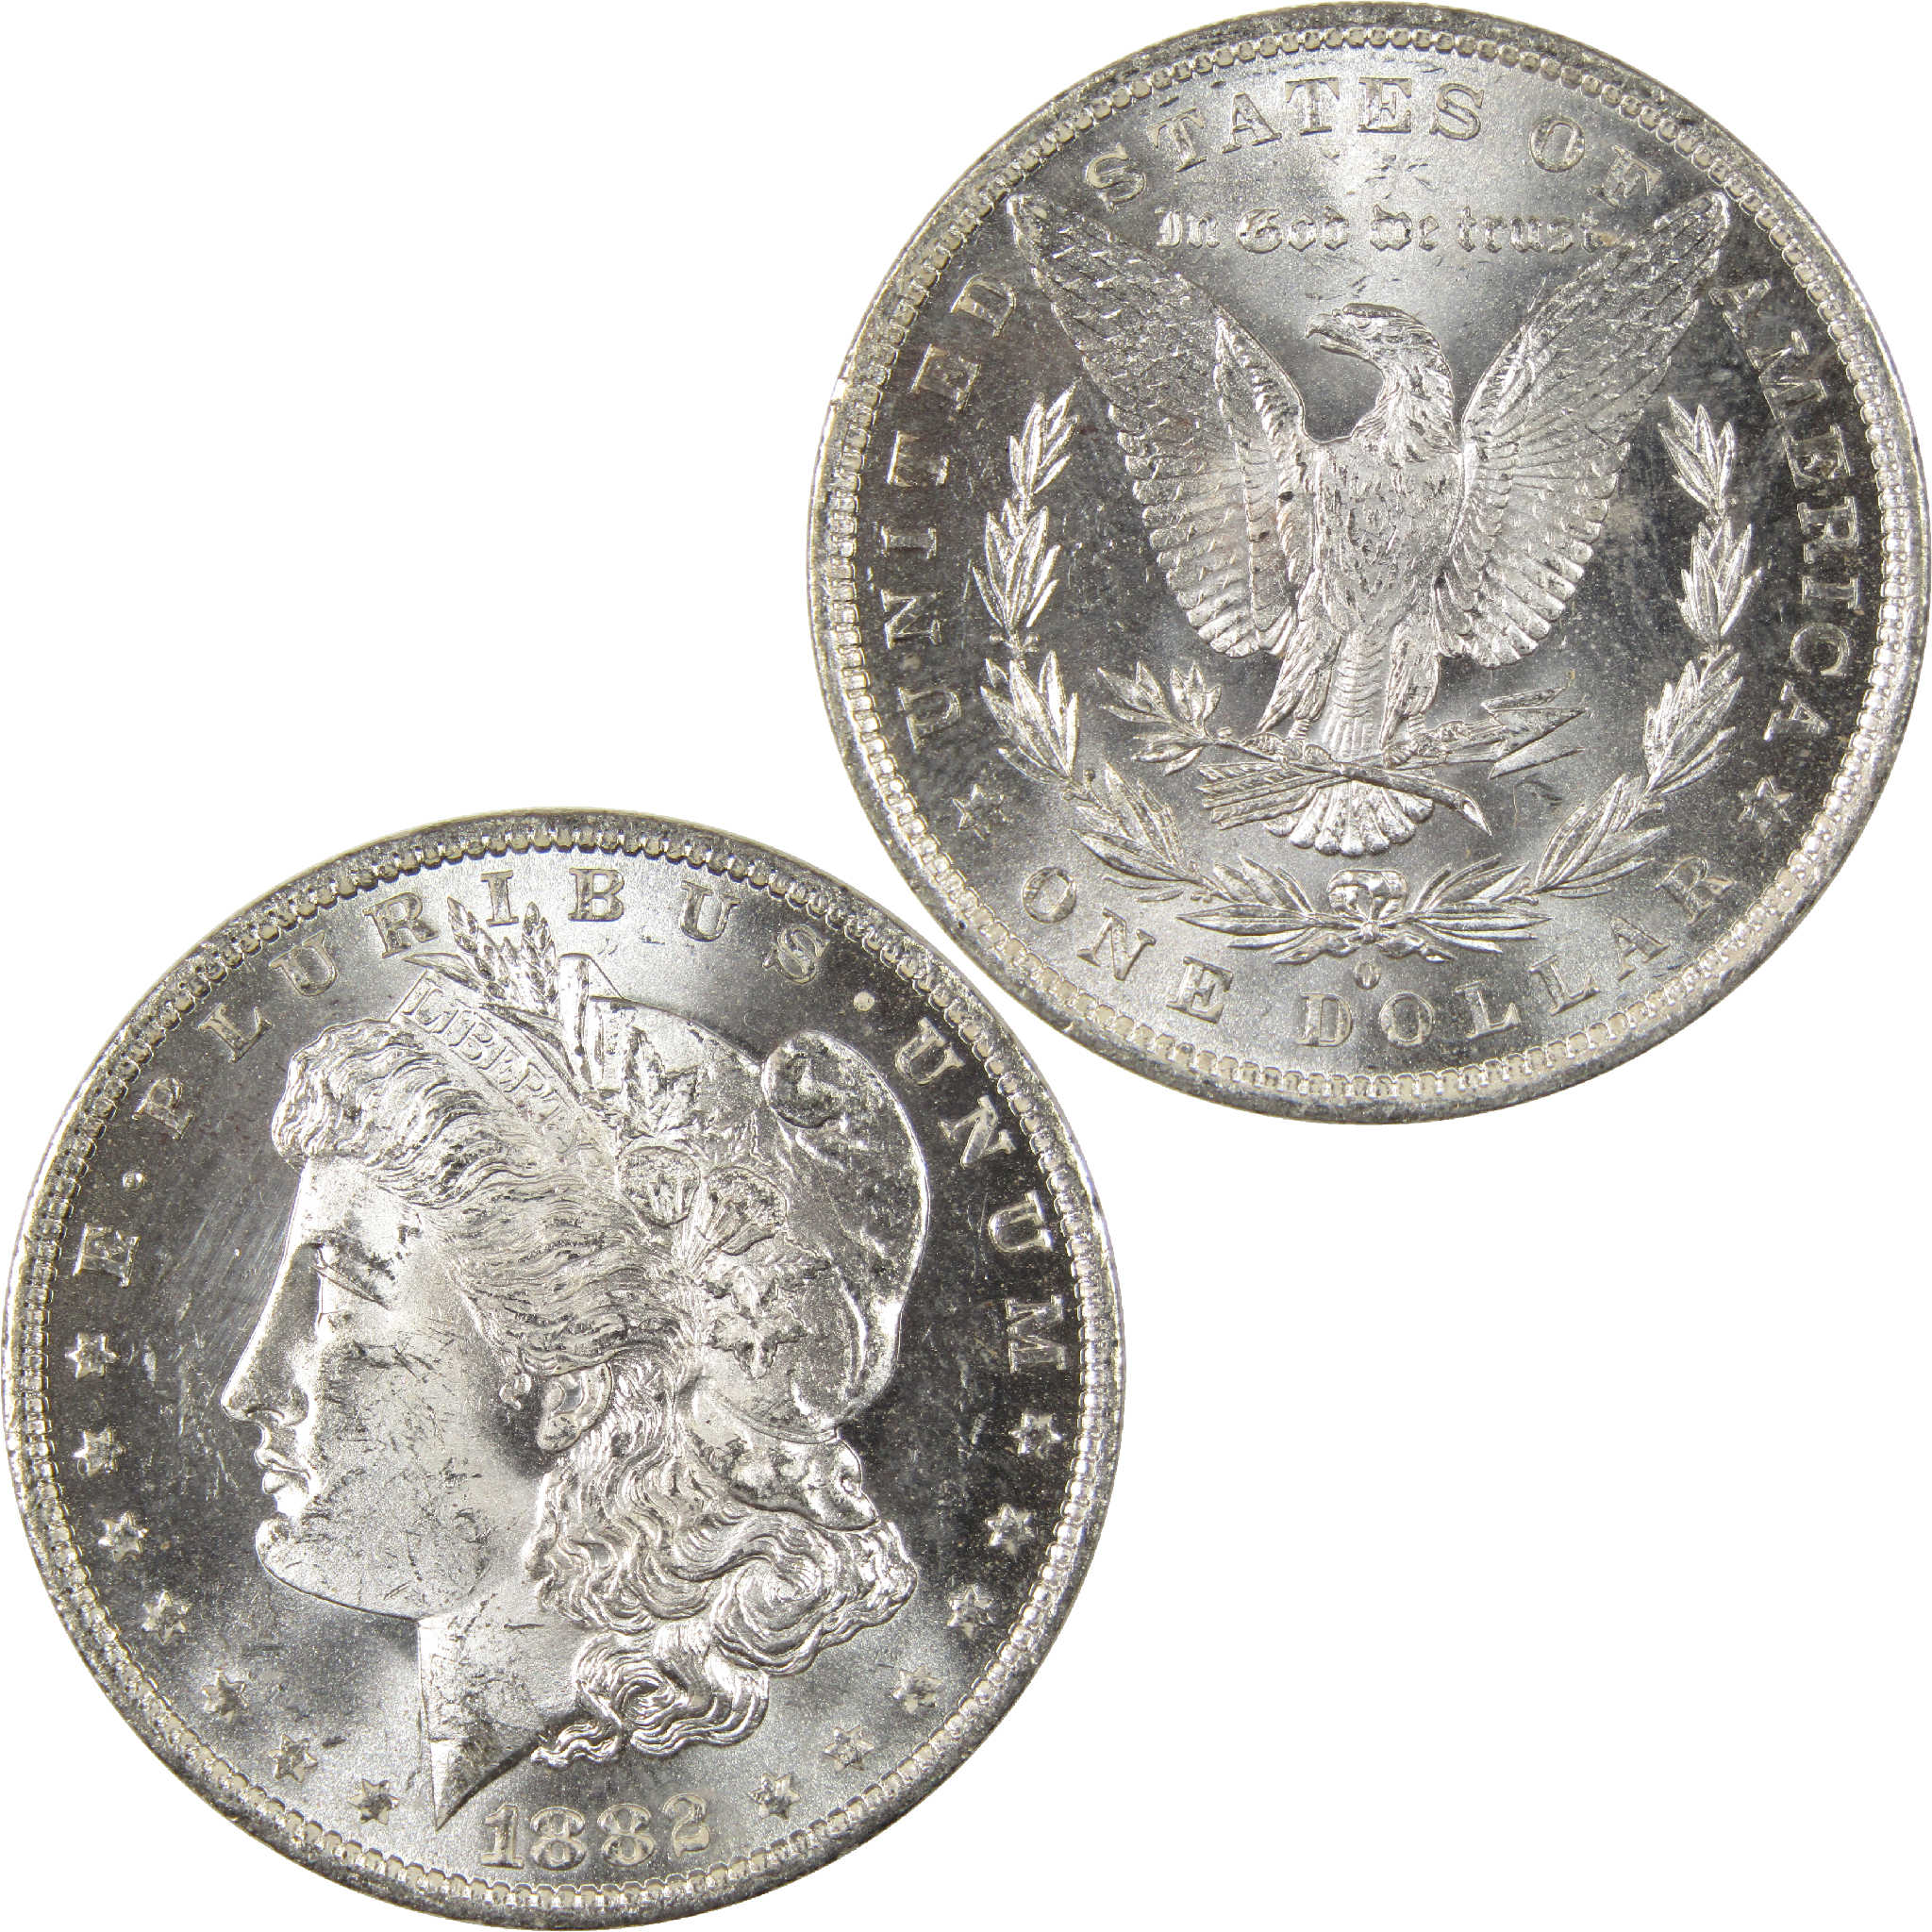 1882 O Morgan Dollar Uncirculated Silver $1 Coin - Morgan coin - Morgan silver dollar - Morgan silver dollar for sale - Profile Coins &amp; Collectibles